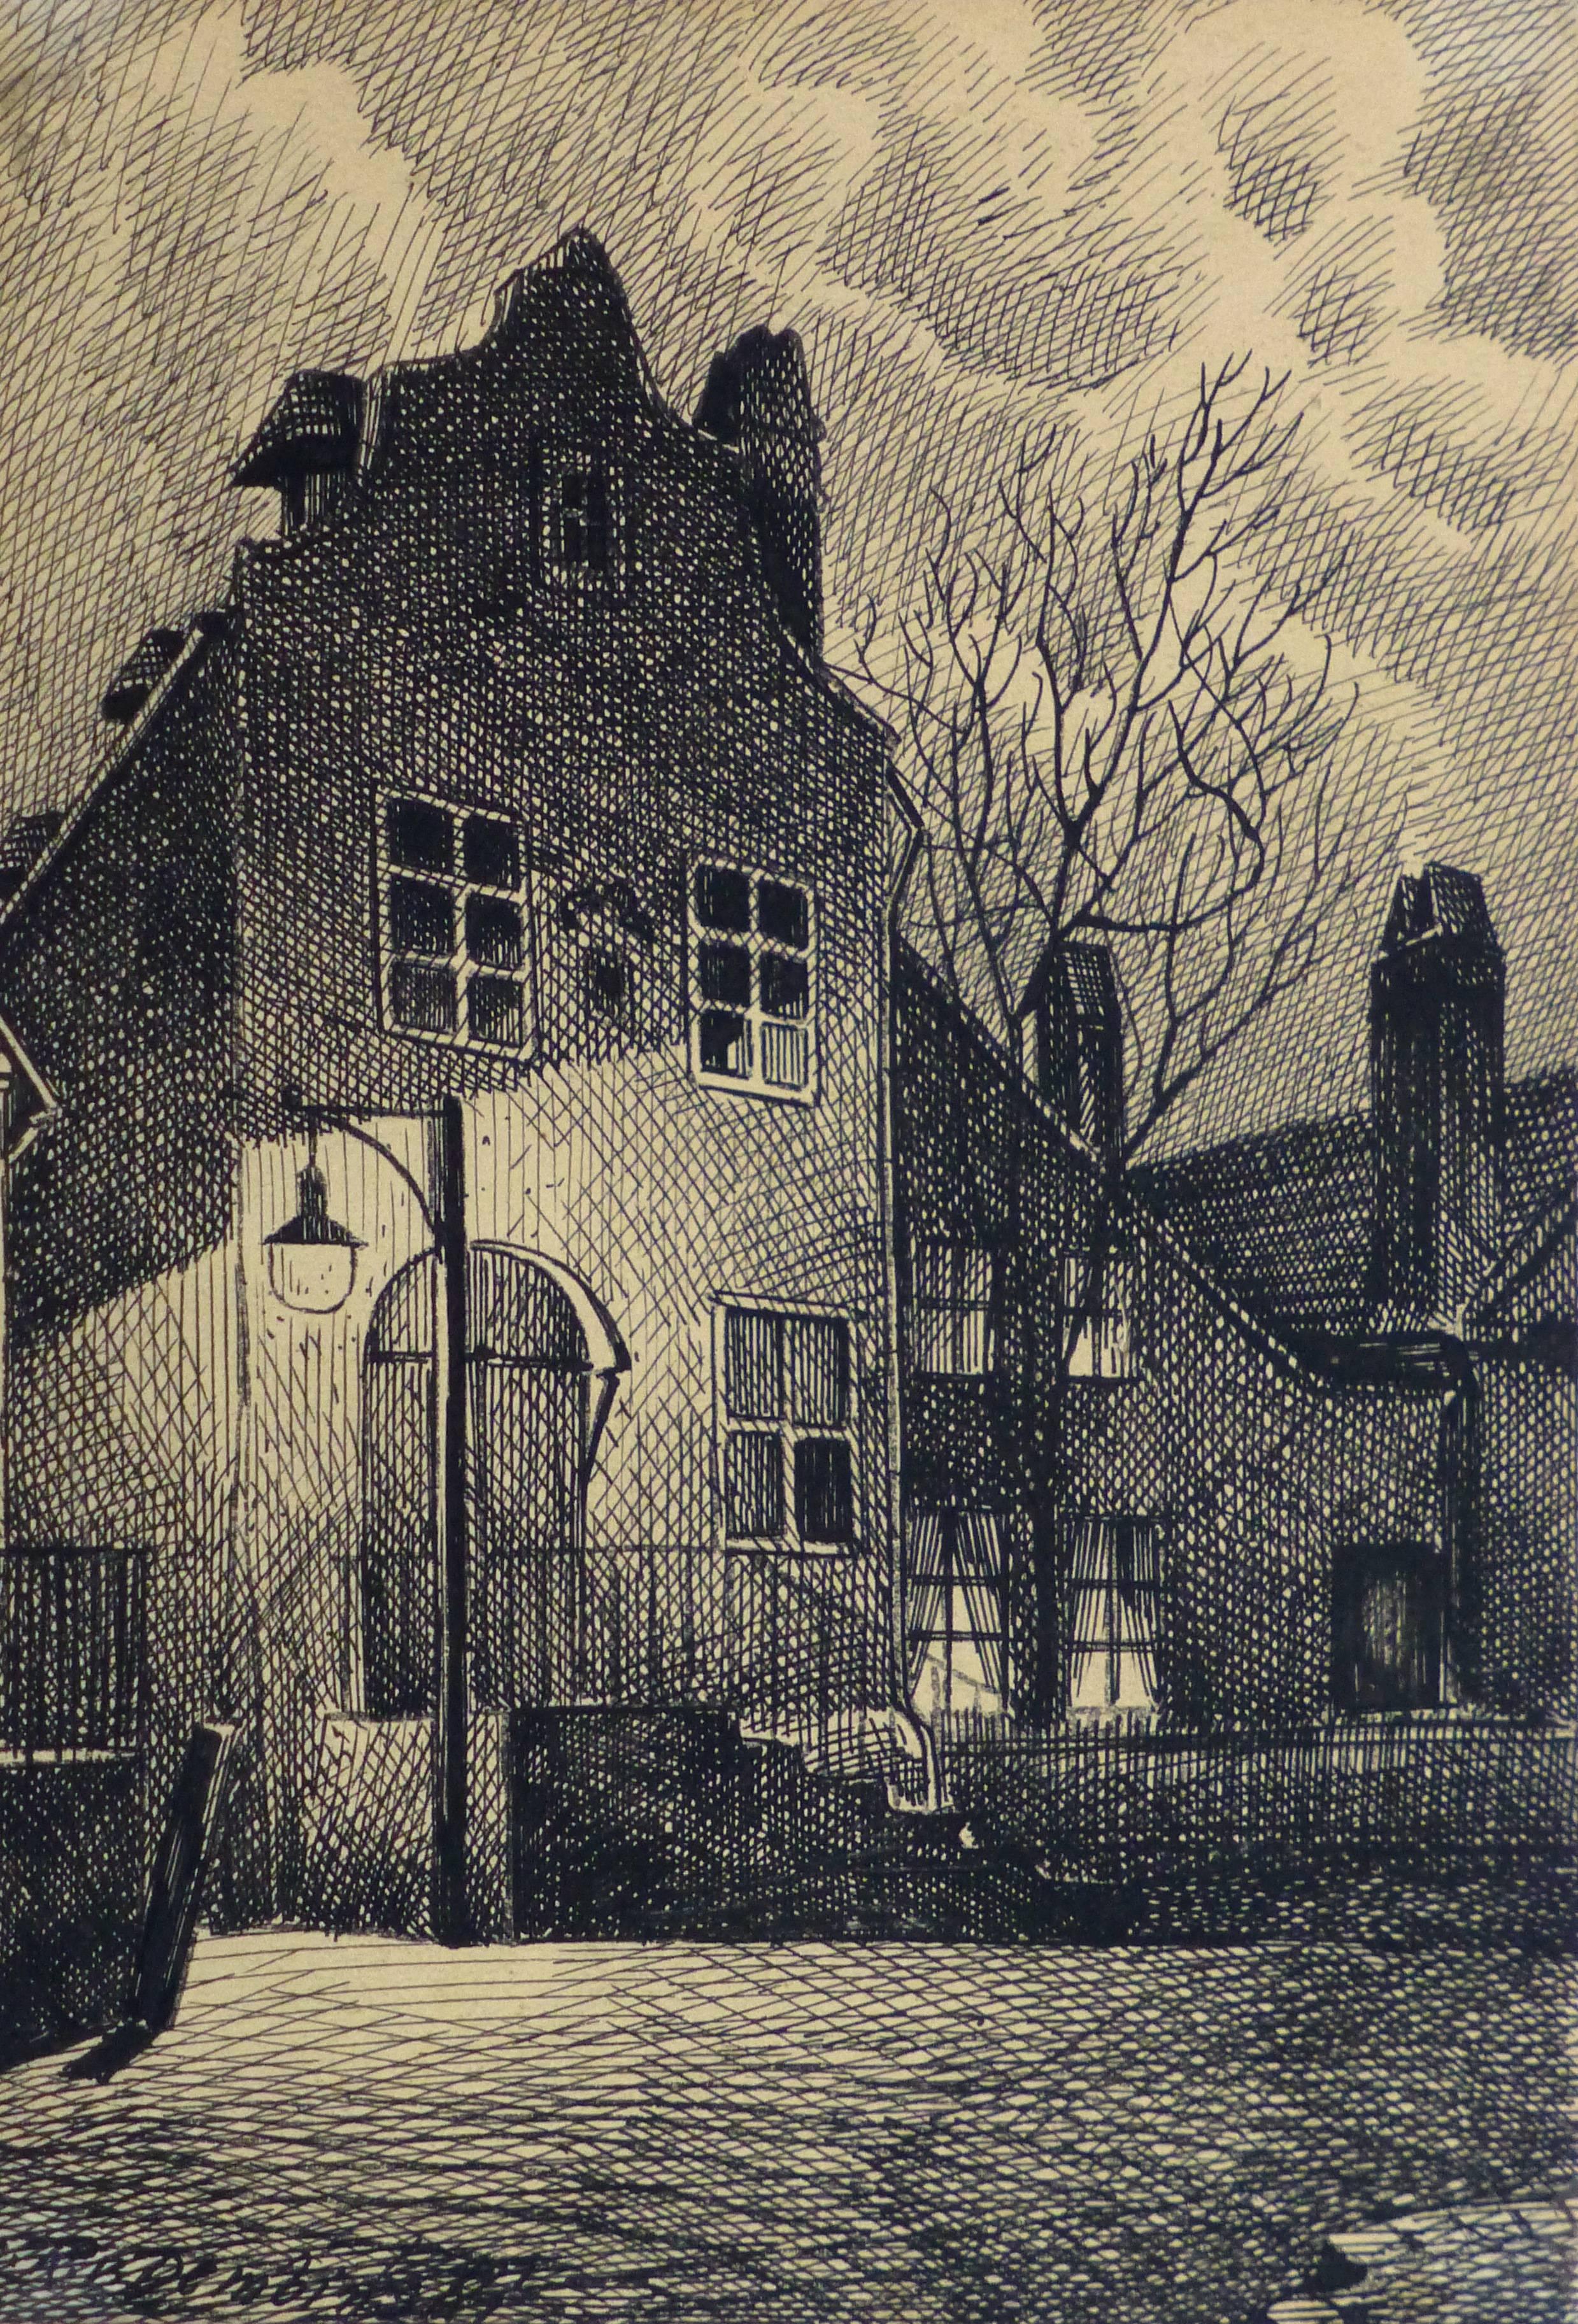 Johann Fucink Landscape Art - Vintage Pen and Ink Drawing - Evening Commence